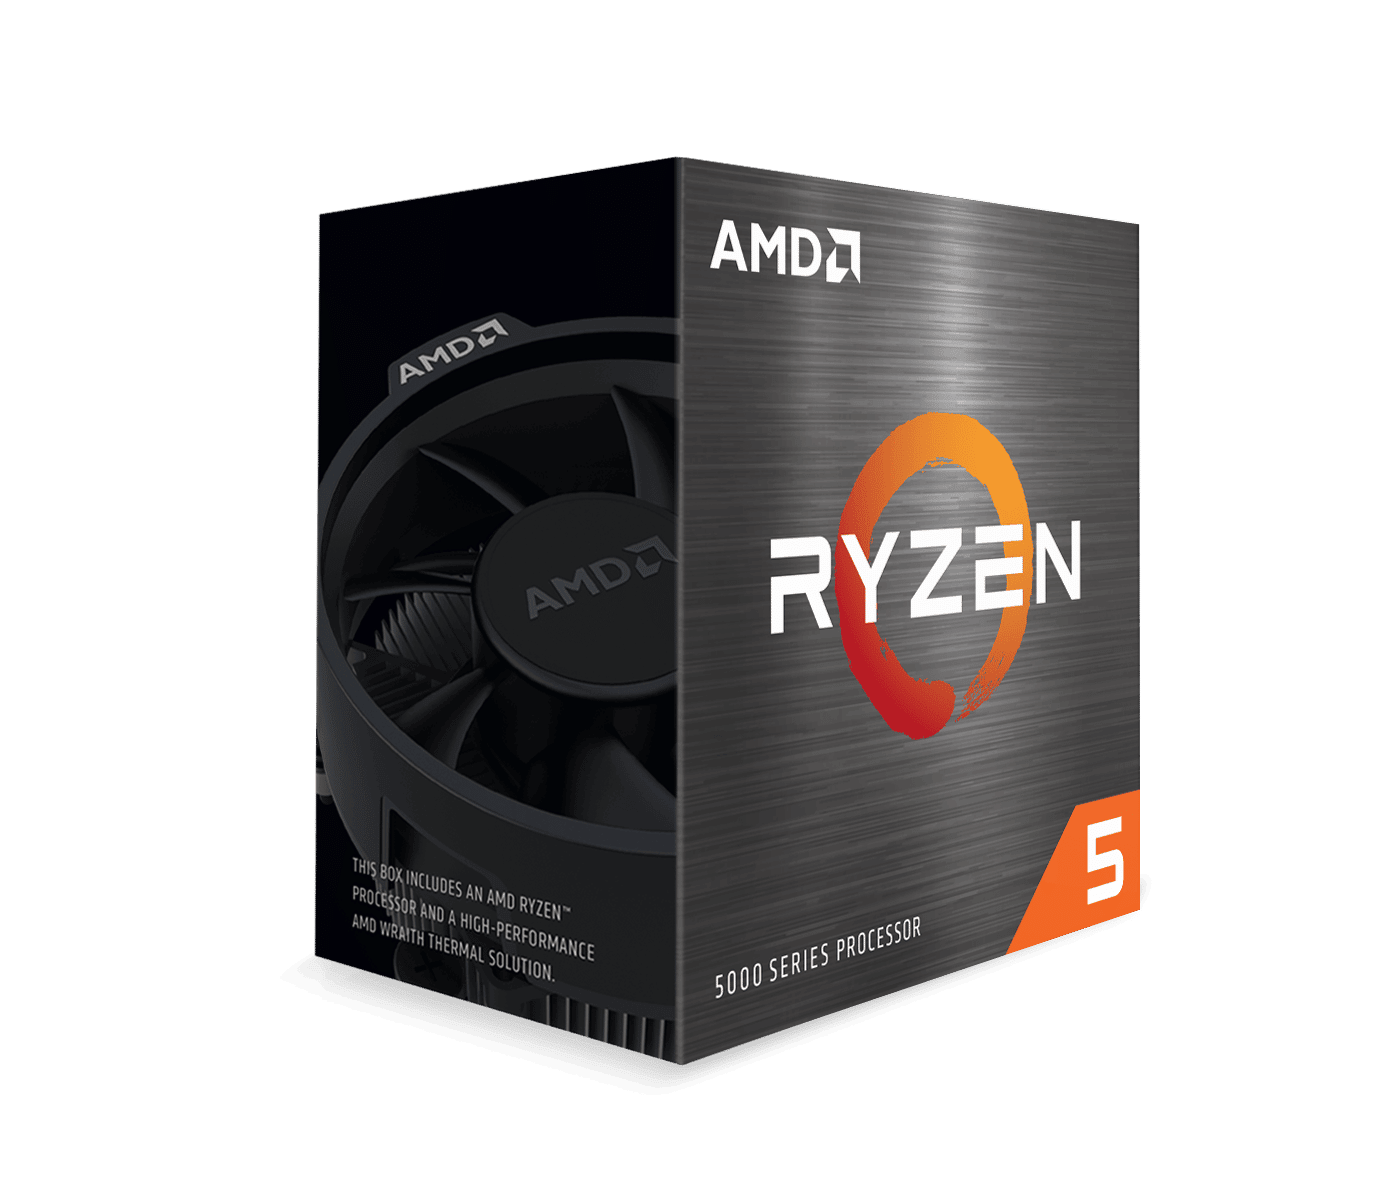 Revisión de AMD Ryzen 5 5600G: Cezanne llega al mercado minorista con gráficos Vega (una vez más)